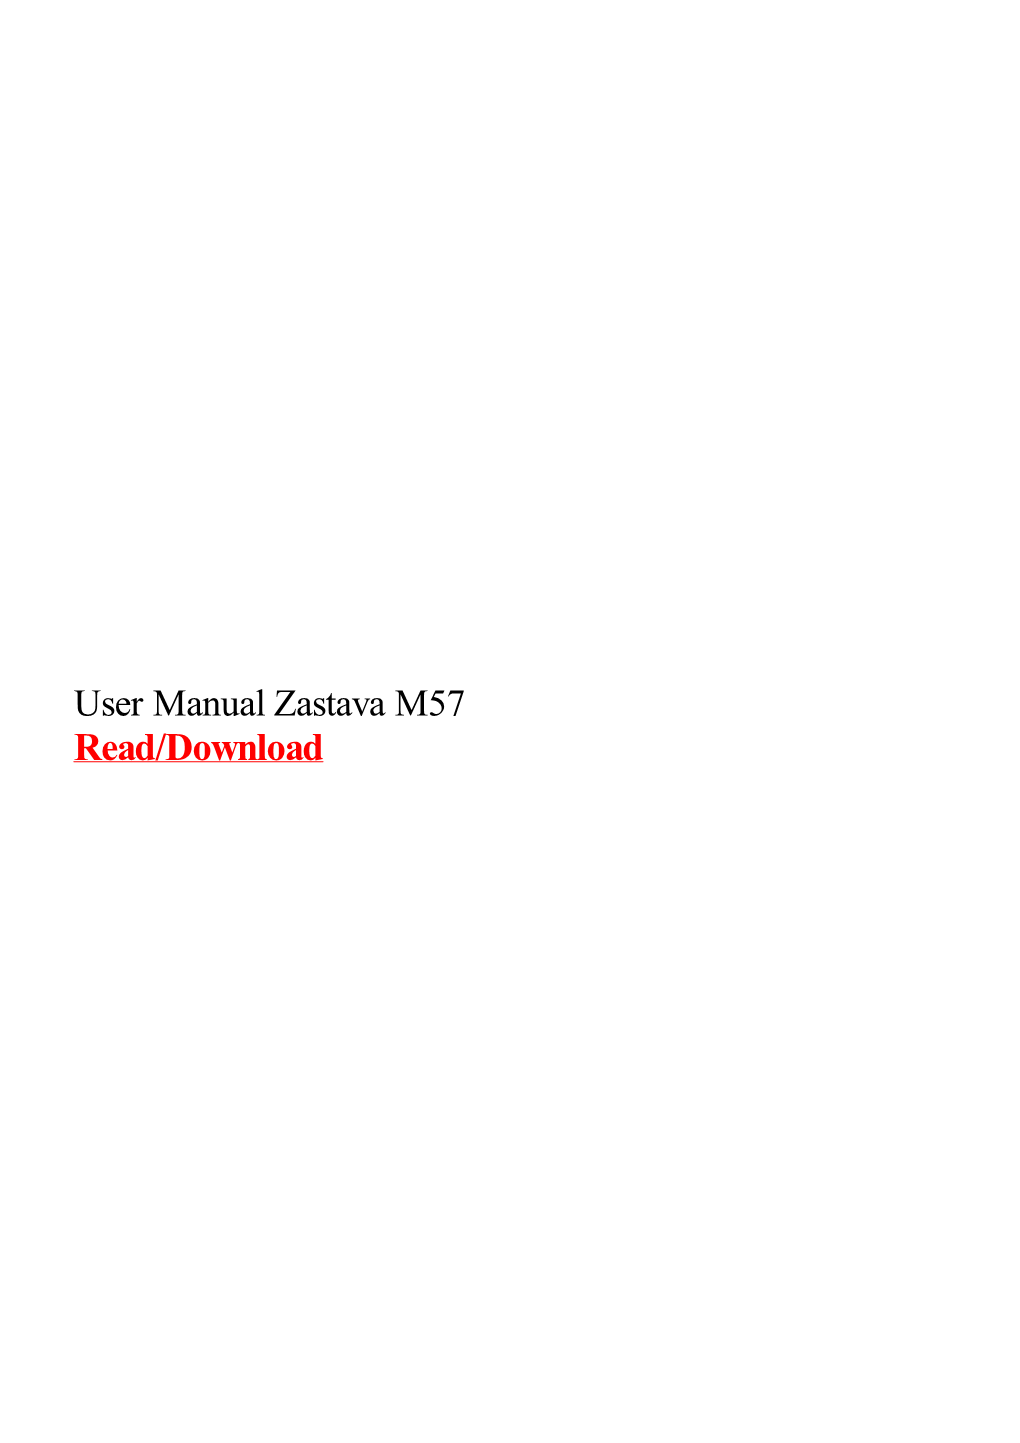 User Manual Zastava M57